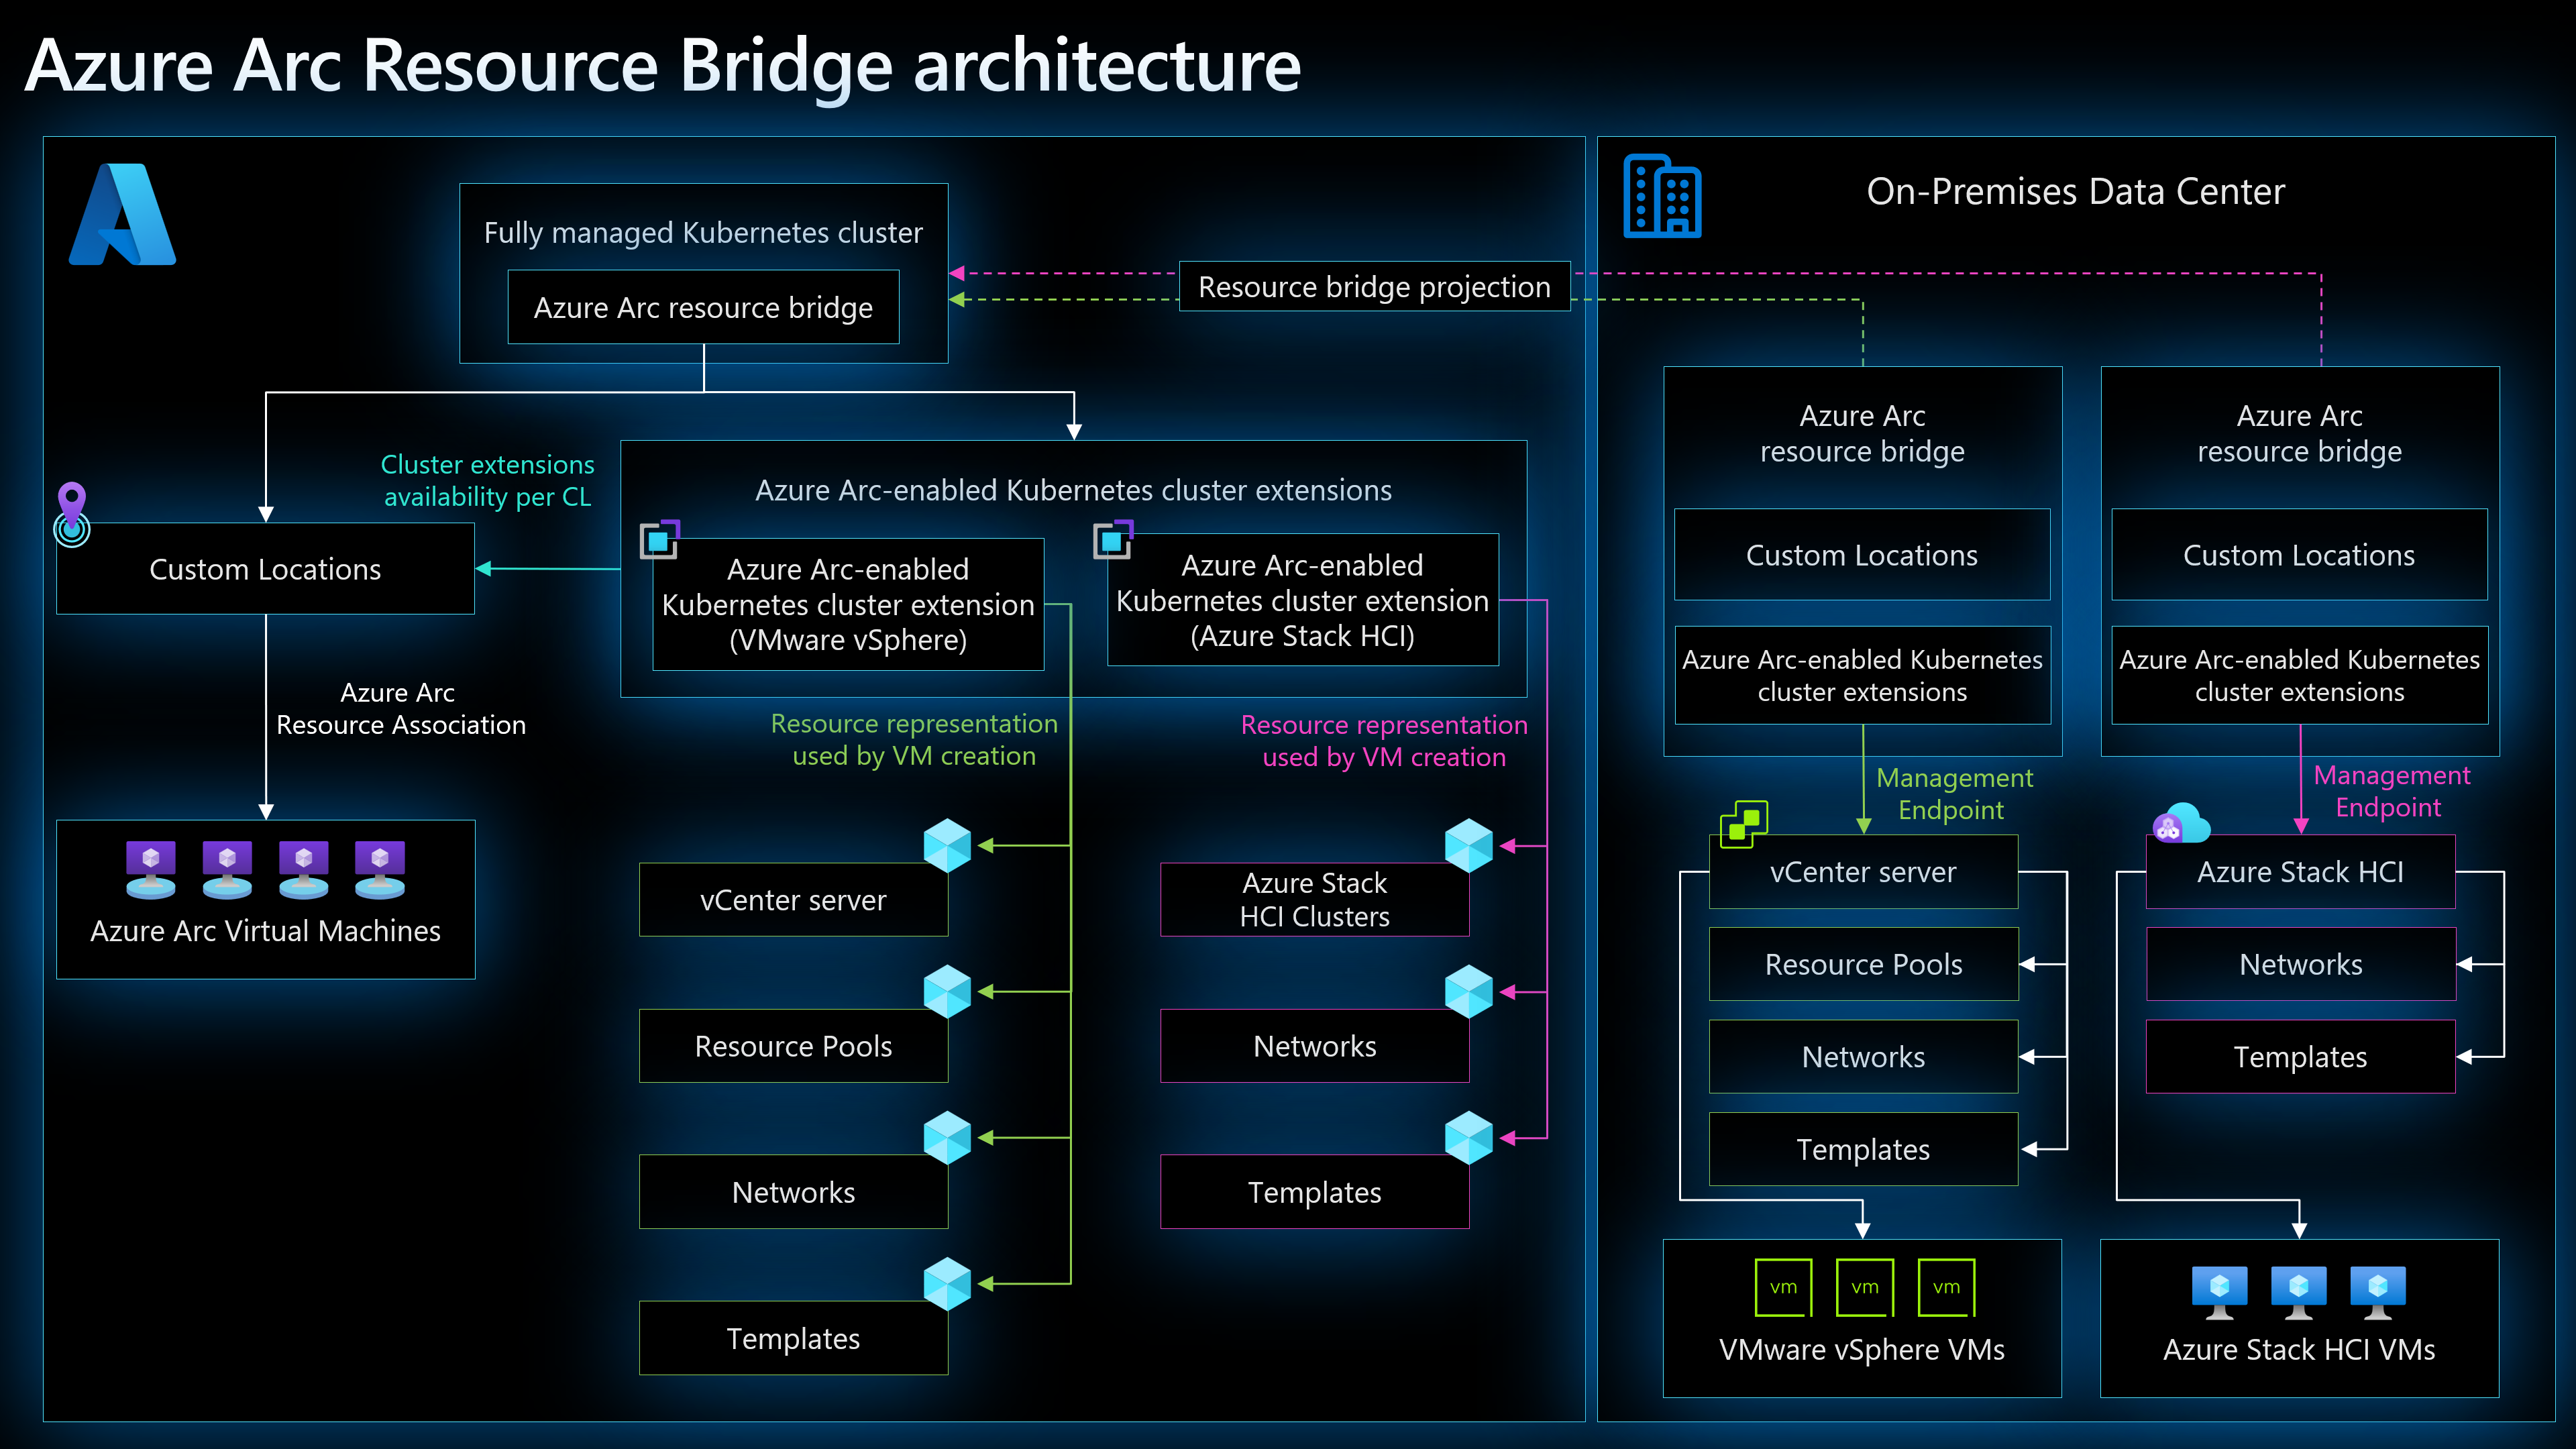 Azure Arc resource bridge architecture diagram.